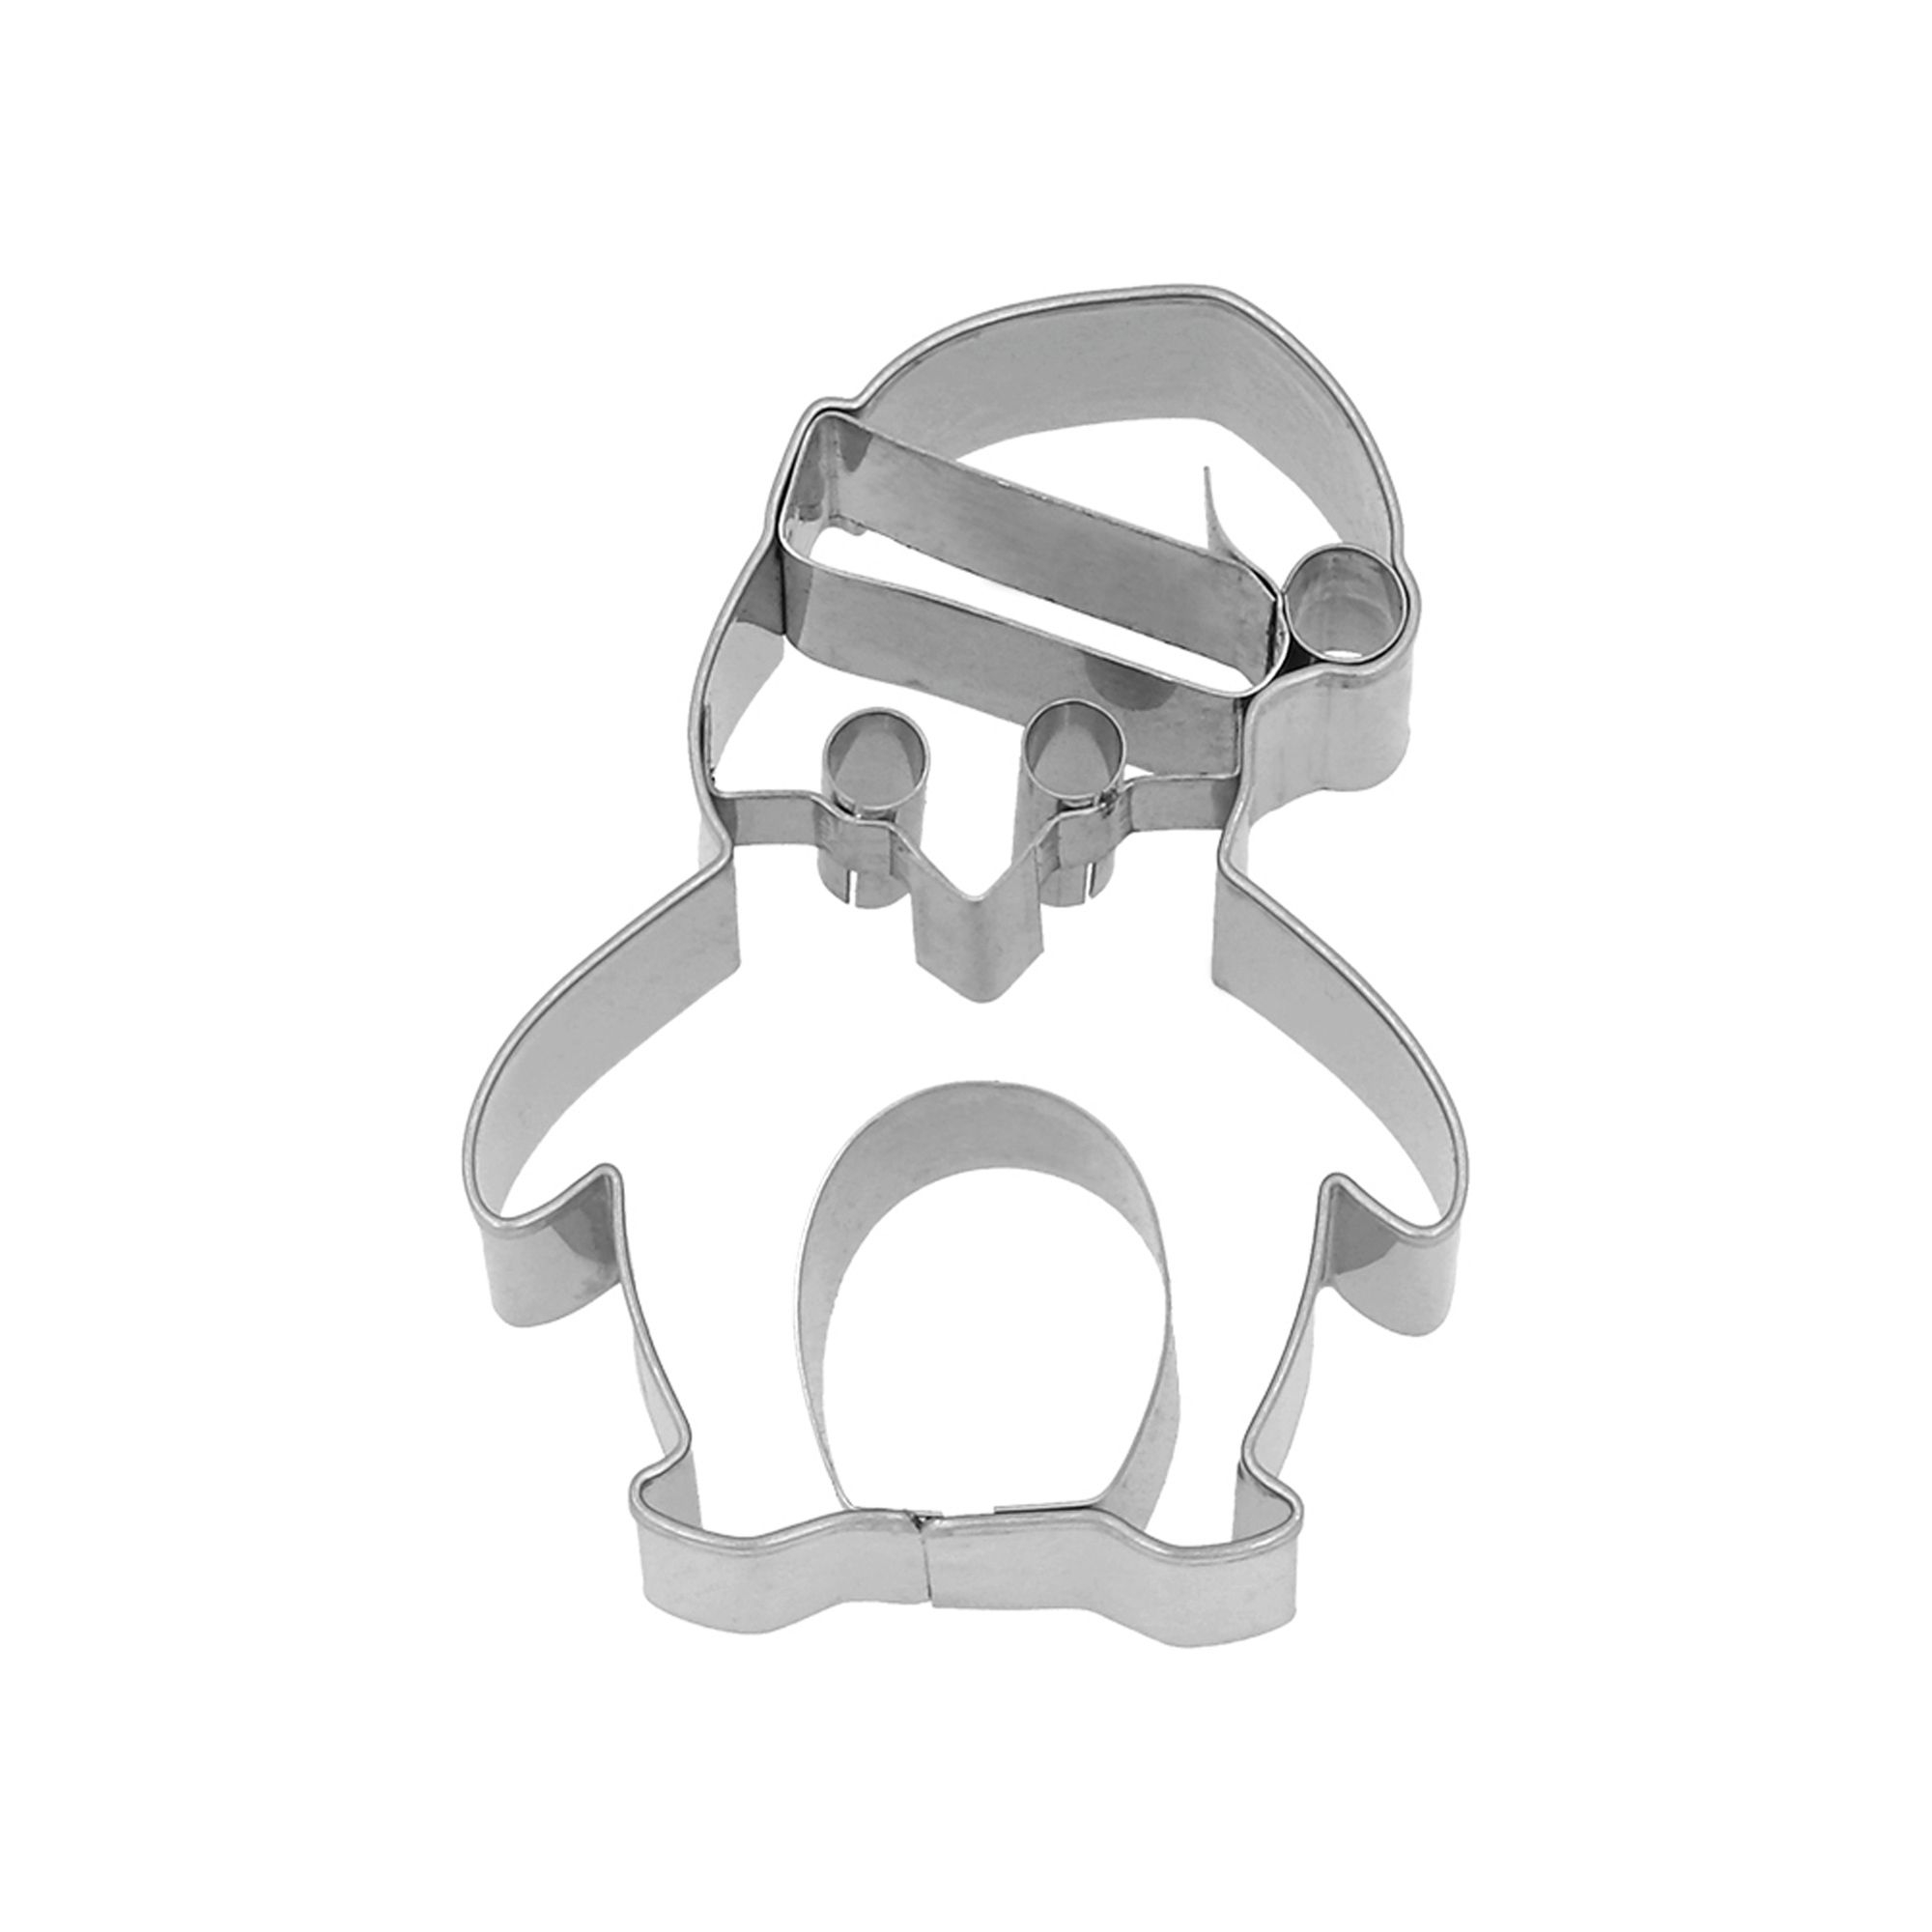 Birkman - Ausstechform - Weihnachts-Pinguin 8 cm